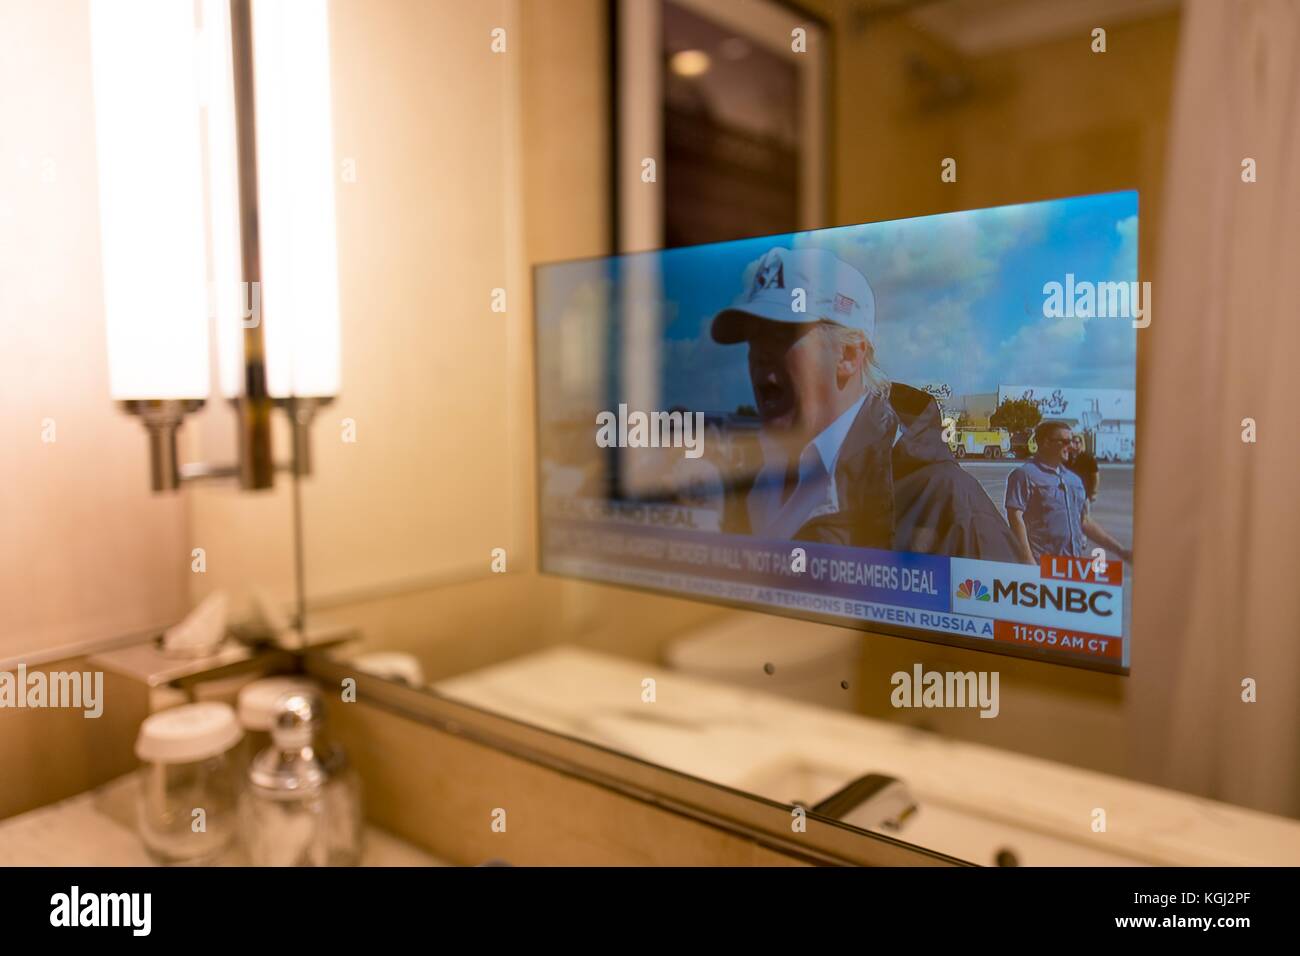 In un business hotel a Manhattan, new york New York, una televisione trasparente incorporato nello specchio del bagno fornisce le ultime notizie e gli aggiornamenti per gli ospiti dell'albergo, in questo caso una storia circa il presidente statunitense Donald Trump, 14 settembre 2017. Foto Stock